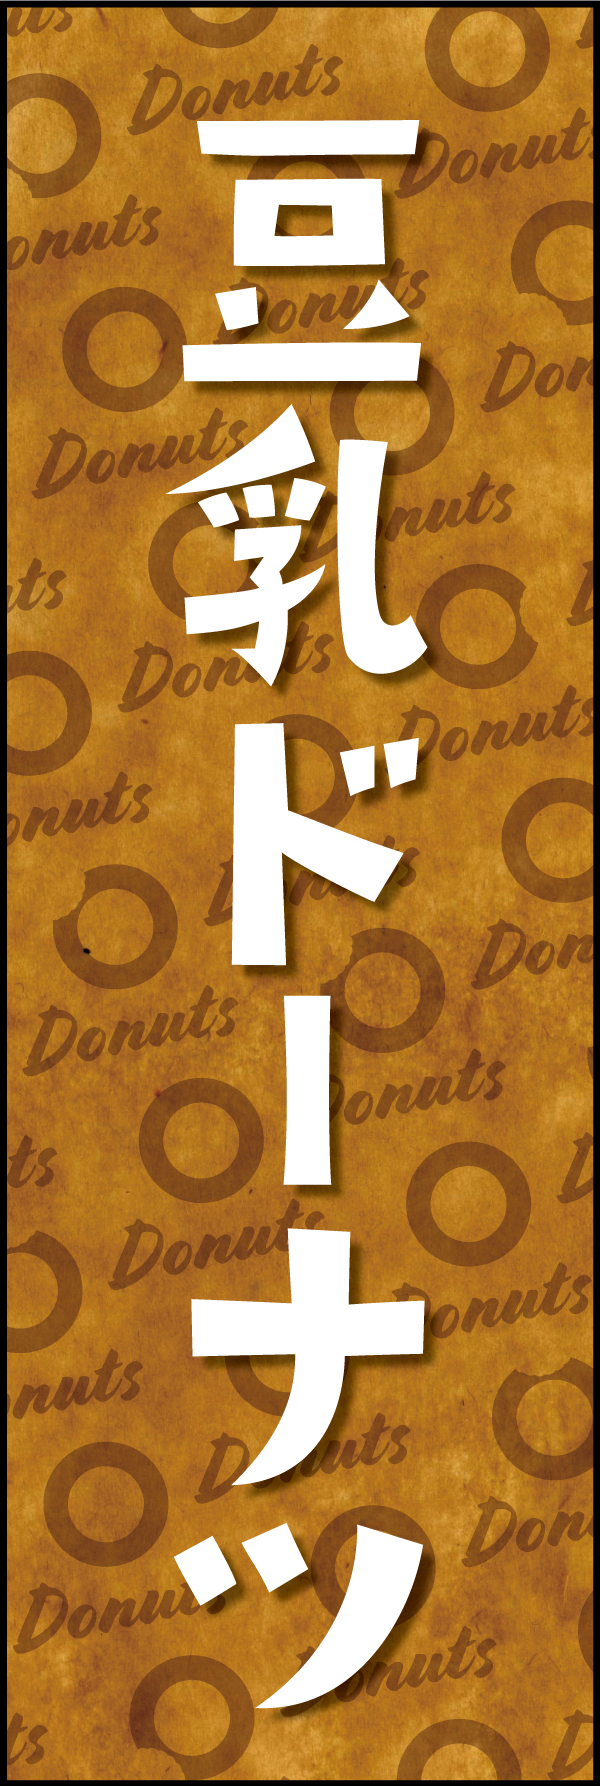 豆乳ドーナツ 190_01 「豆乳ドーナツ」ののぼりです。クラフト感ある包み紙のような背景デザインと文字で、ヘルシーでオーガニックな雰囲気を演出しました。（Y.M）